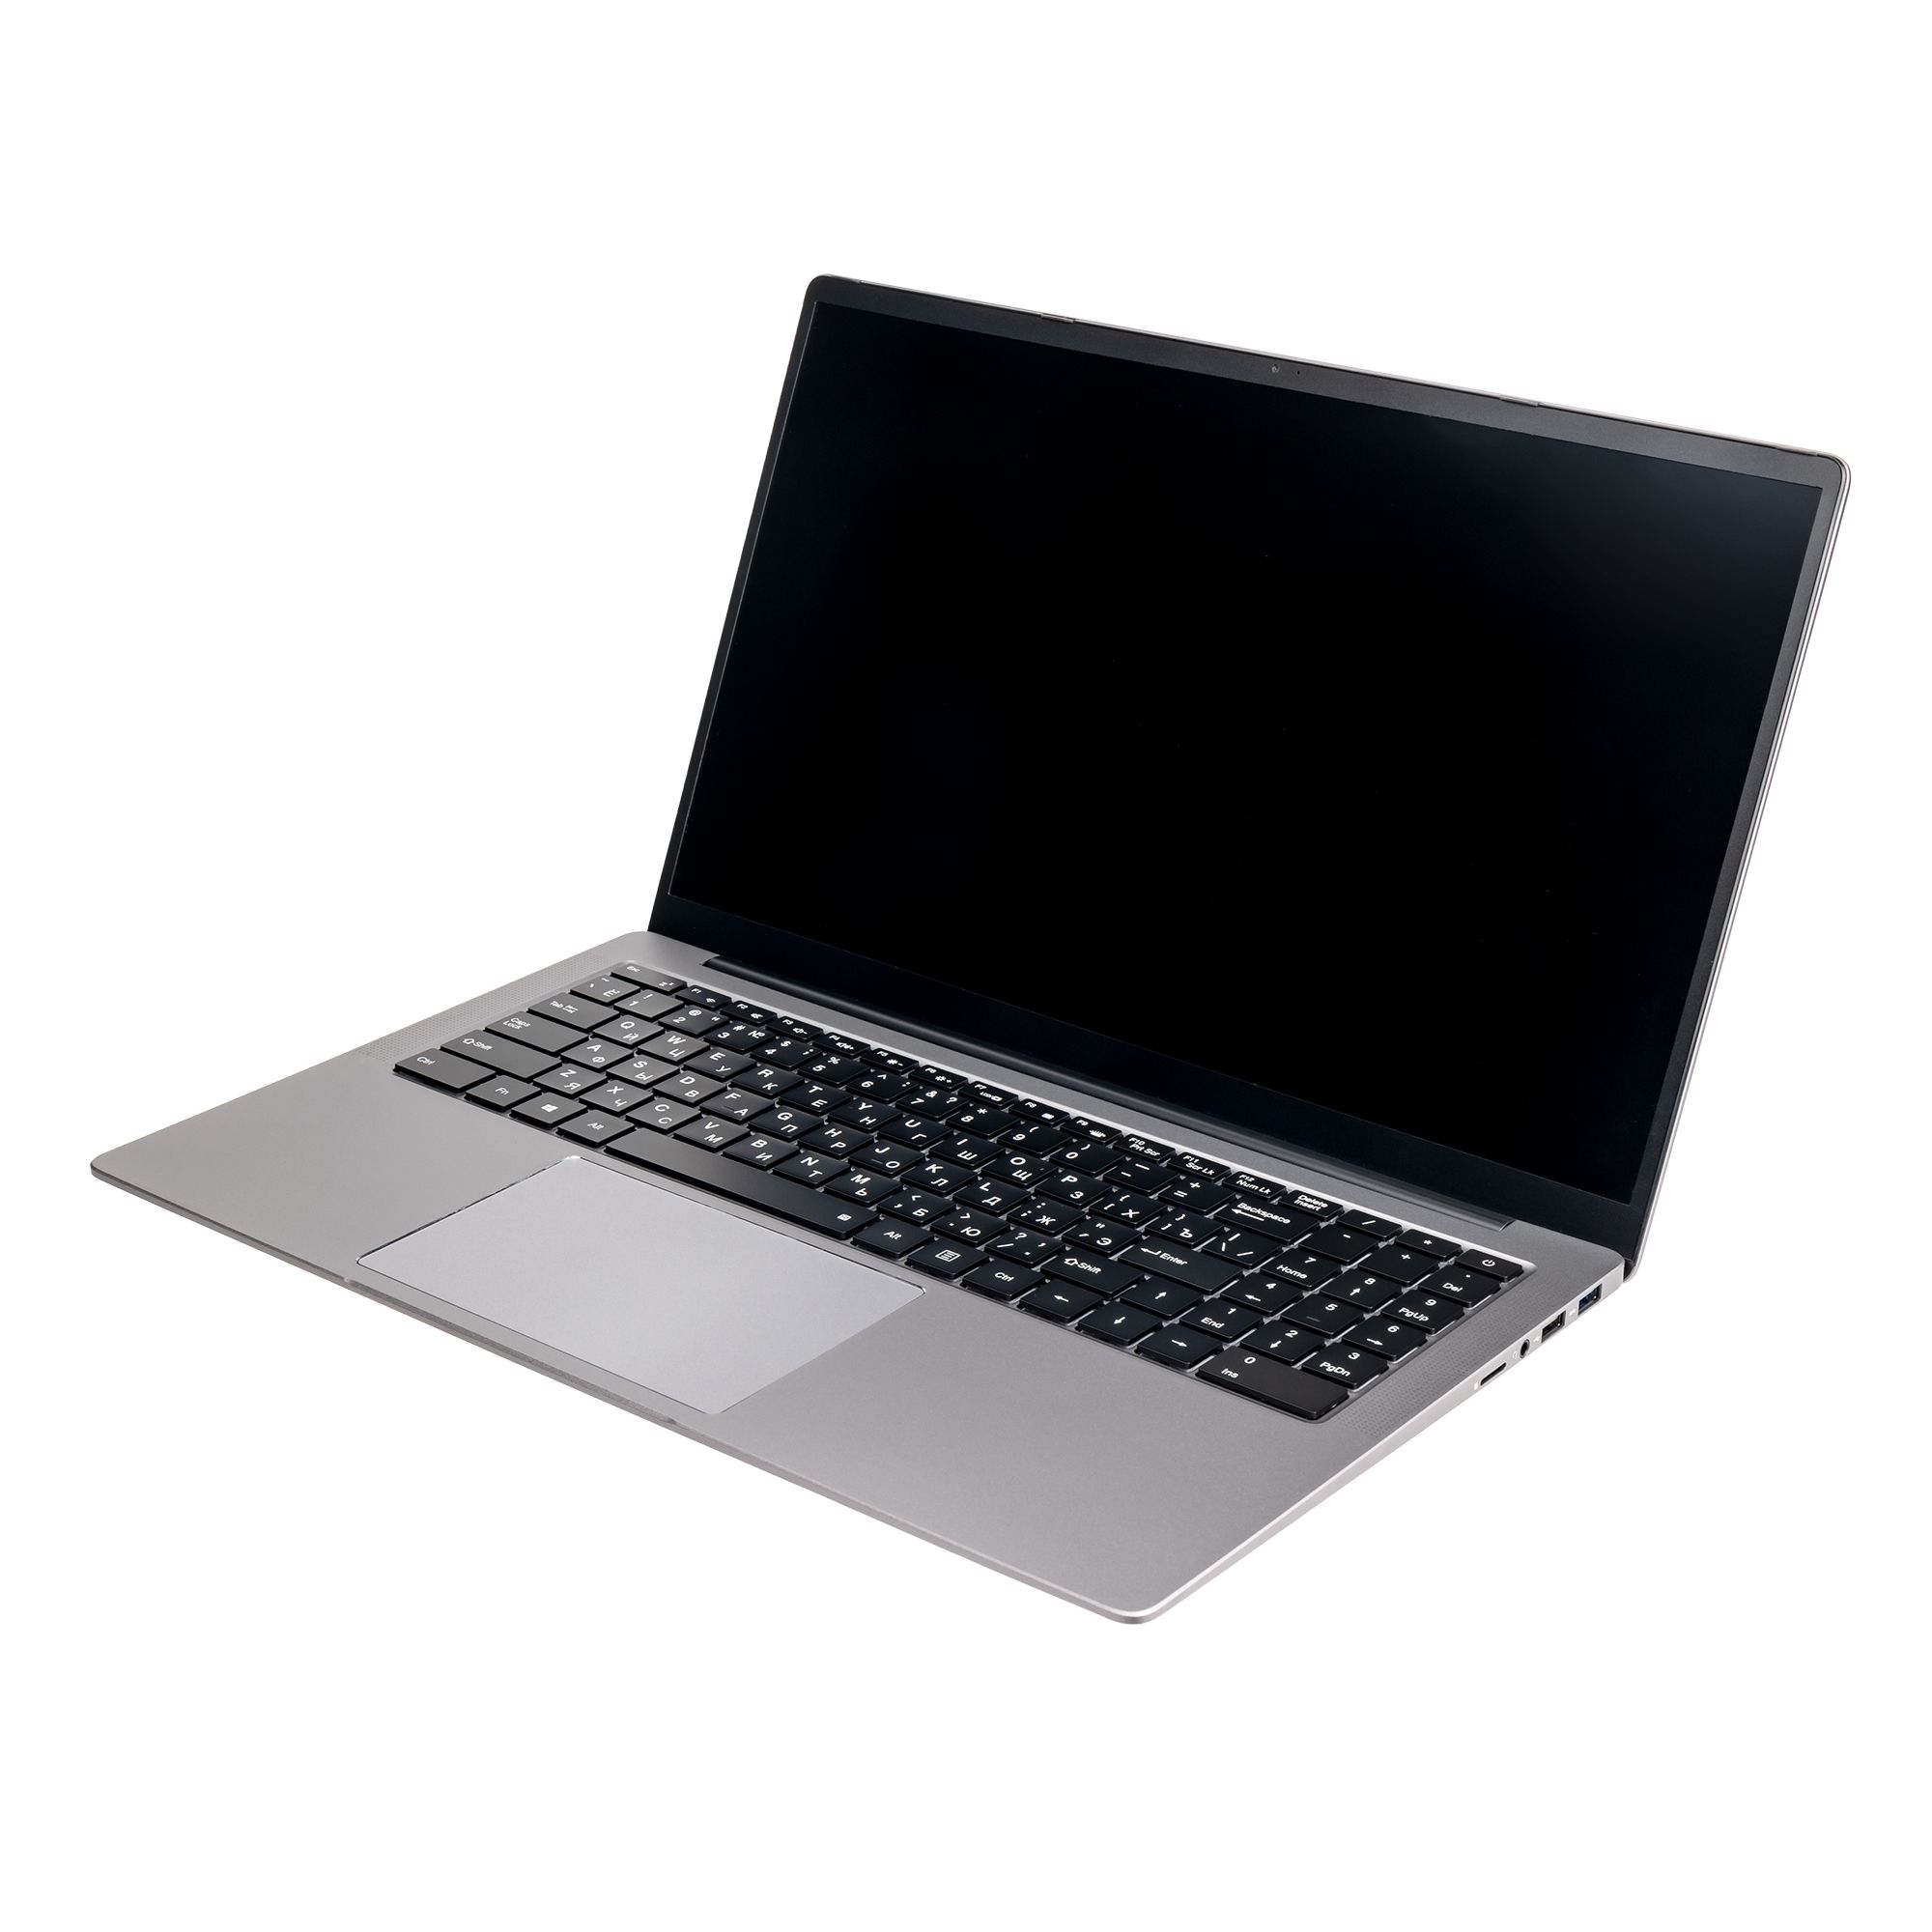 Ноутбук Hiper Expertbook MTL1601 (MTL1601B1235UDS) ноутбук hiper expertbook mtl1601 noos silver mtl1601a1235uds